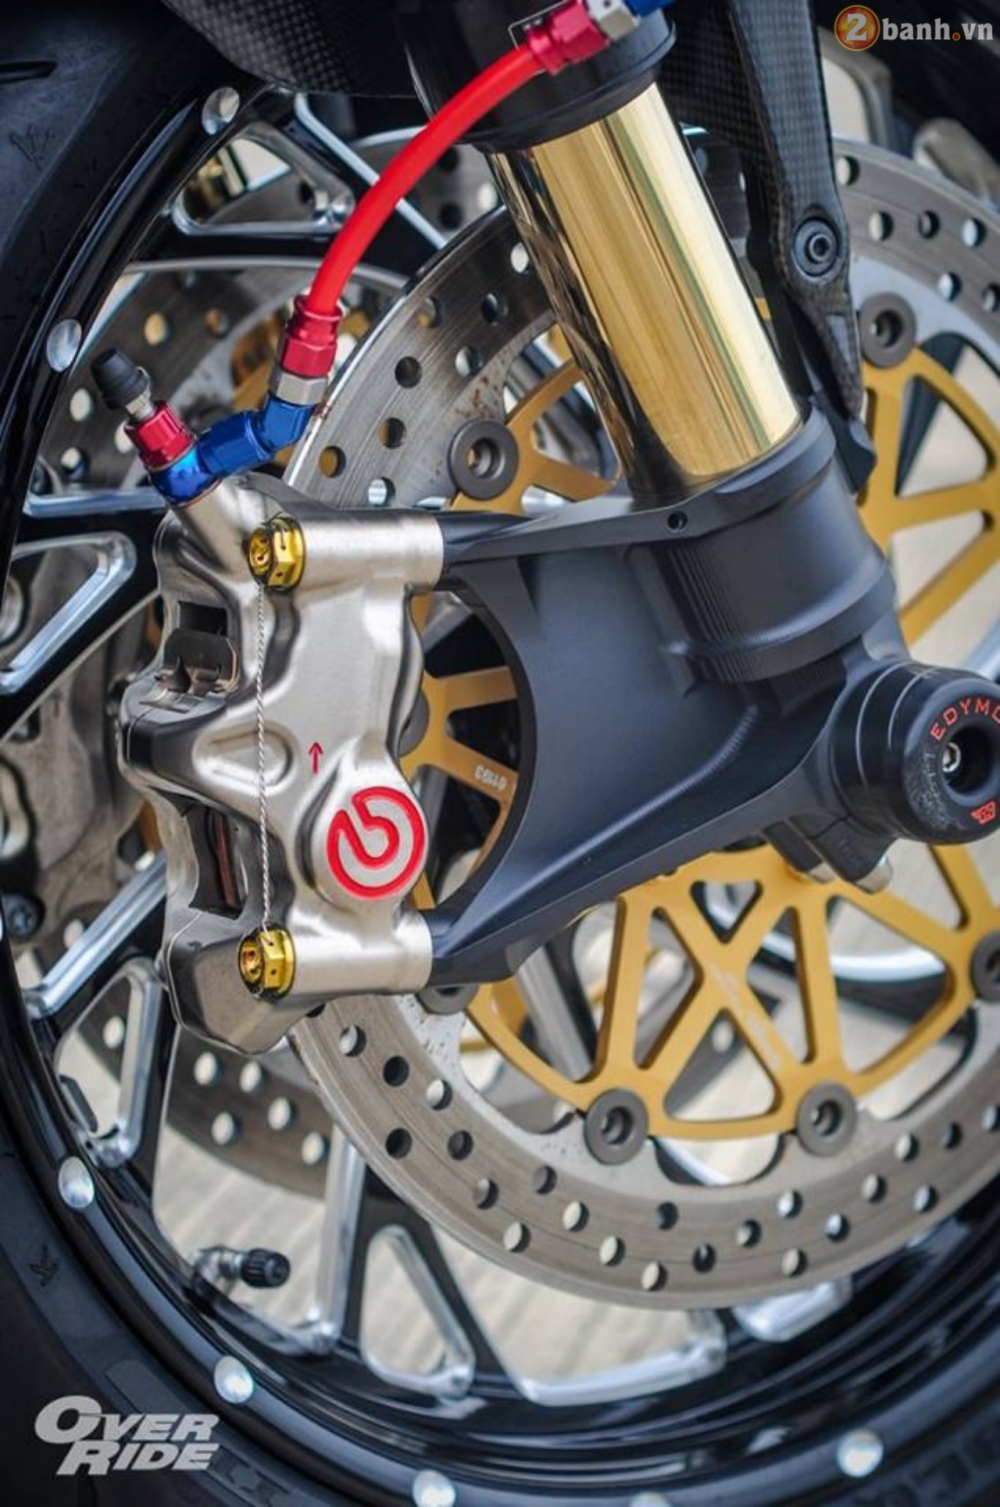 Ducati diavel trong bản độ cromo đầy tốn kém của anh chàng biker khổng lồ